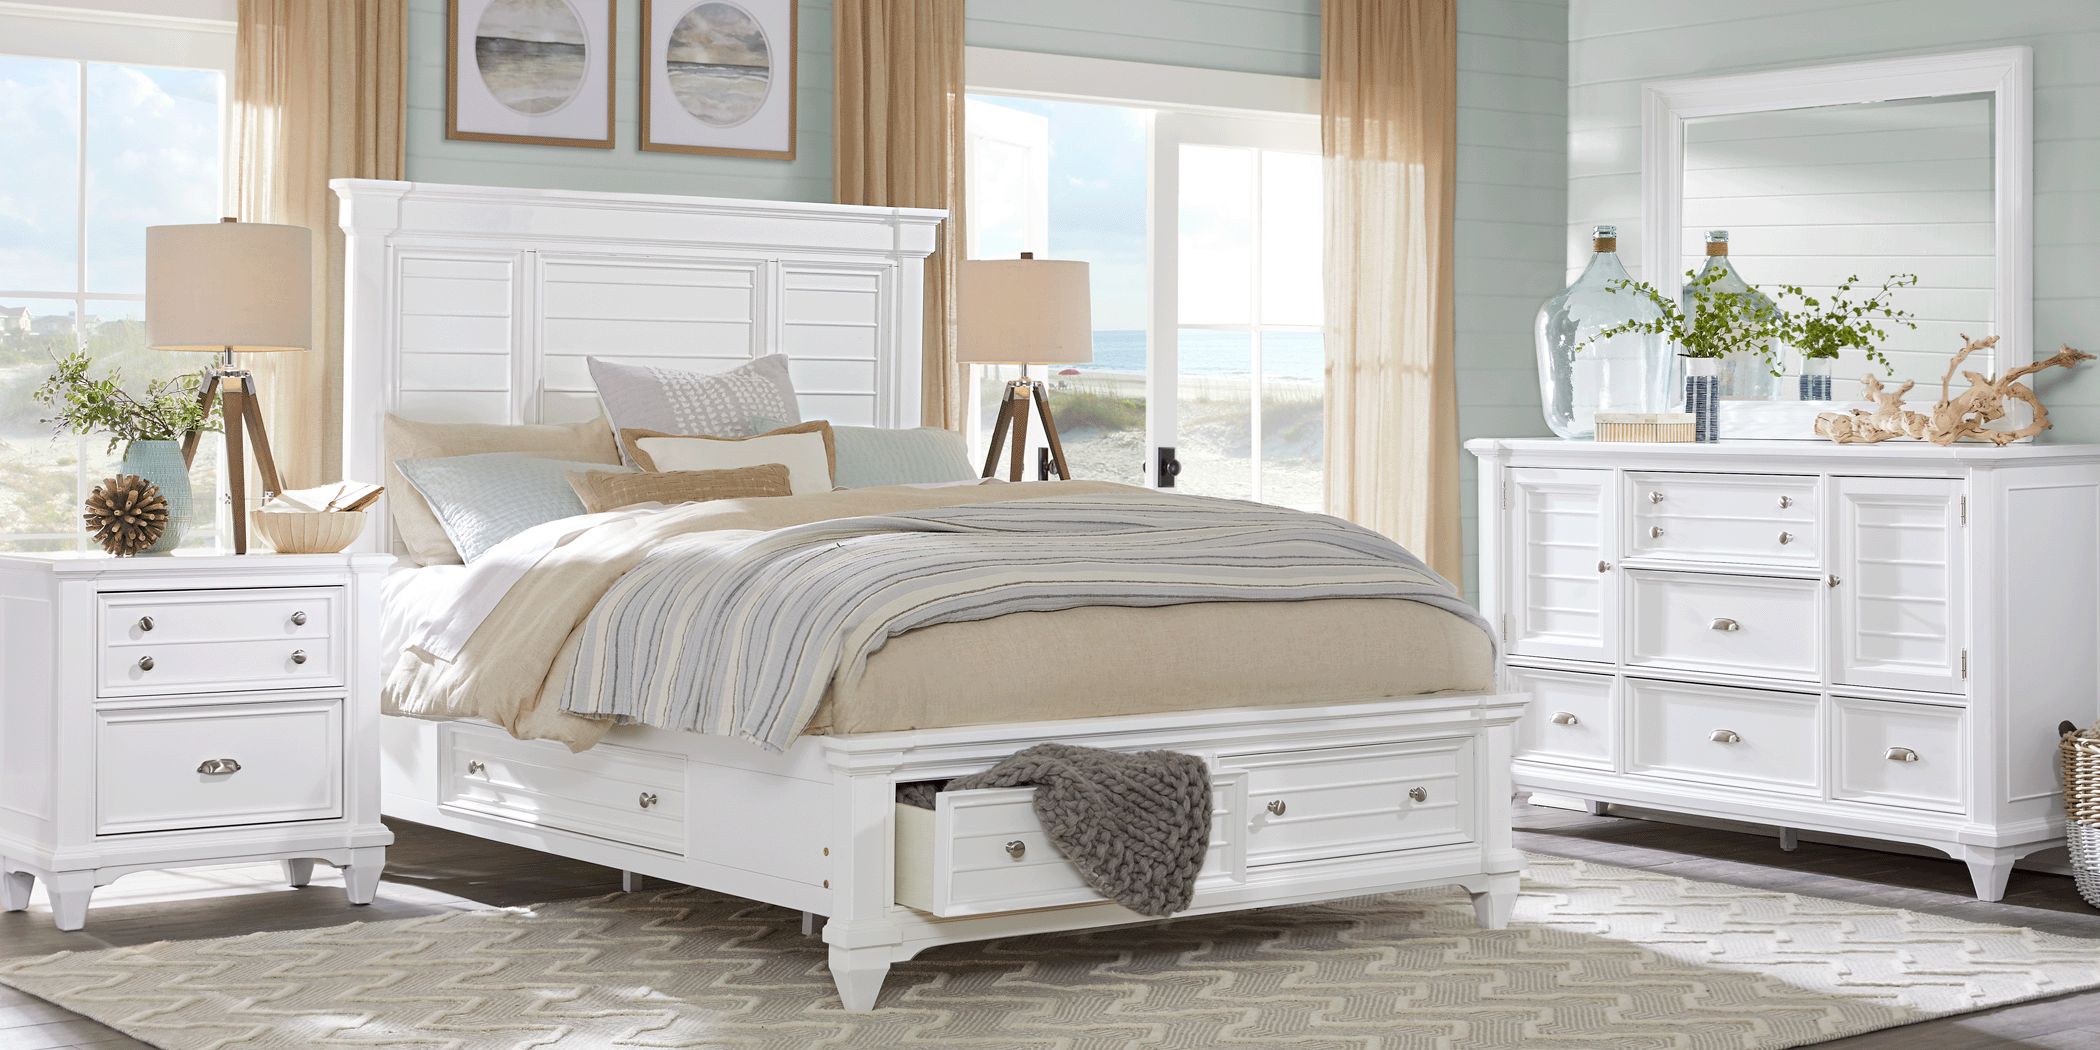 hilton bedroom furniture set